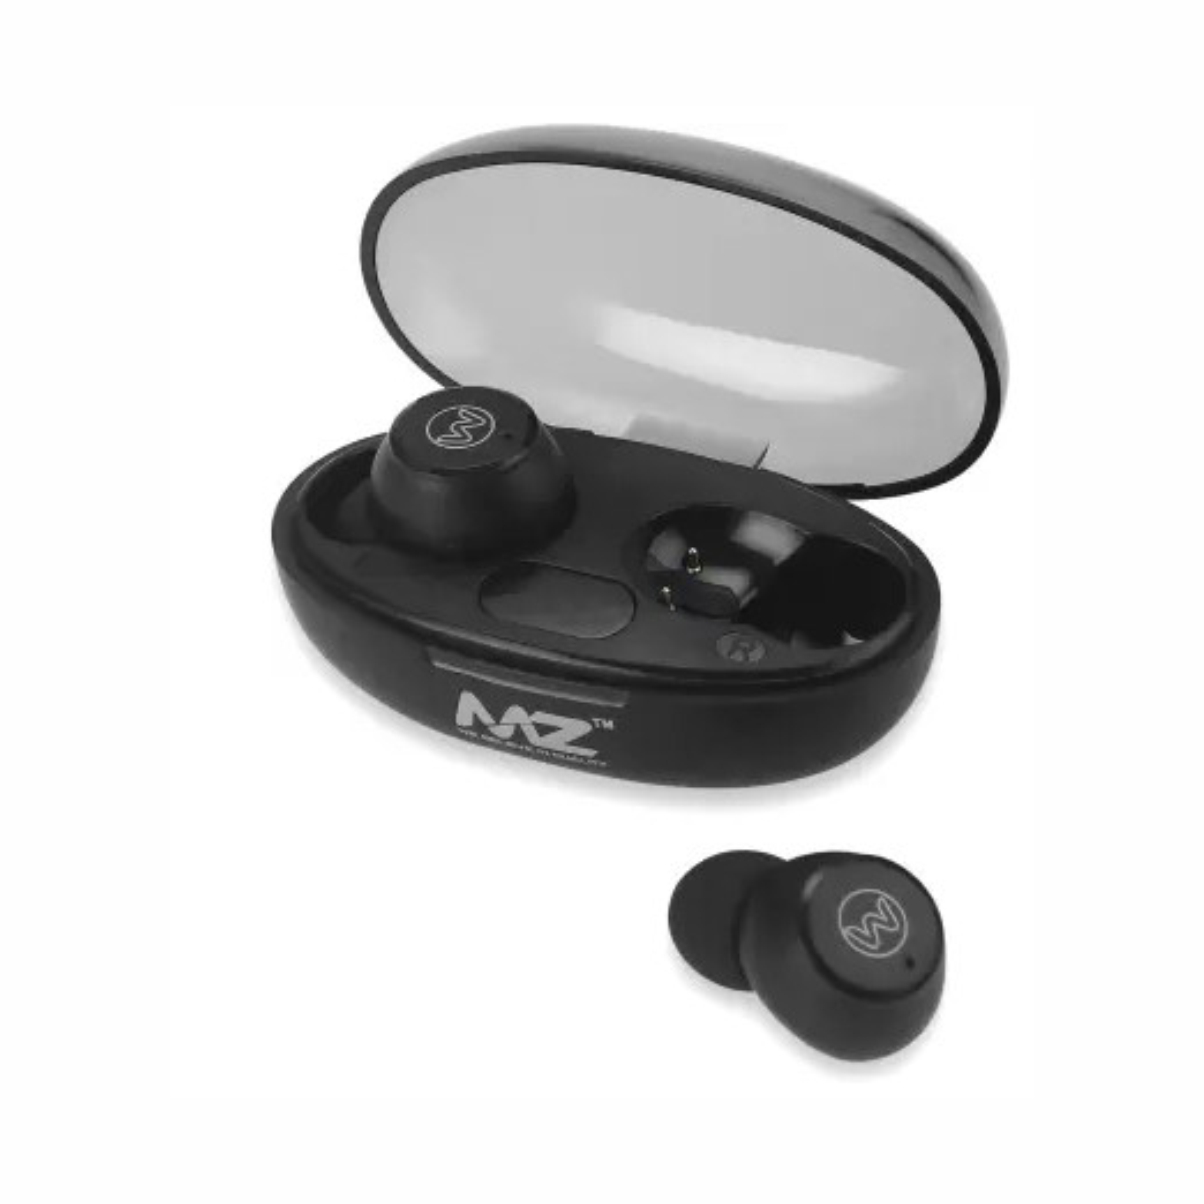 MZ Mpods 71 (Wireless Earbuds) 200mAh Battery, True Wireless Earphones, Bluetooth Headset (Black, True Wireless)